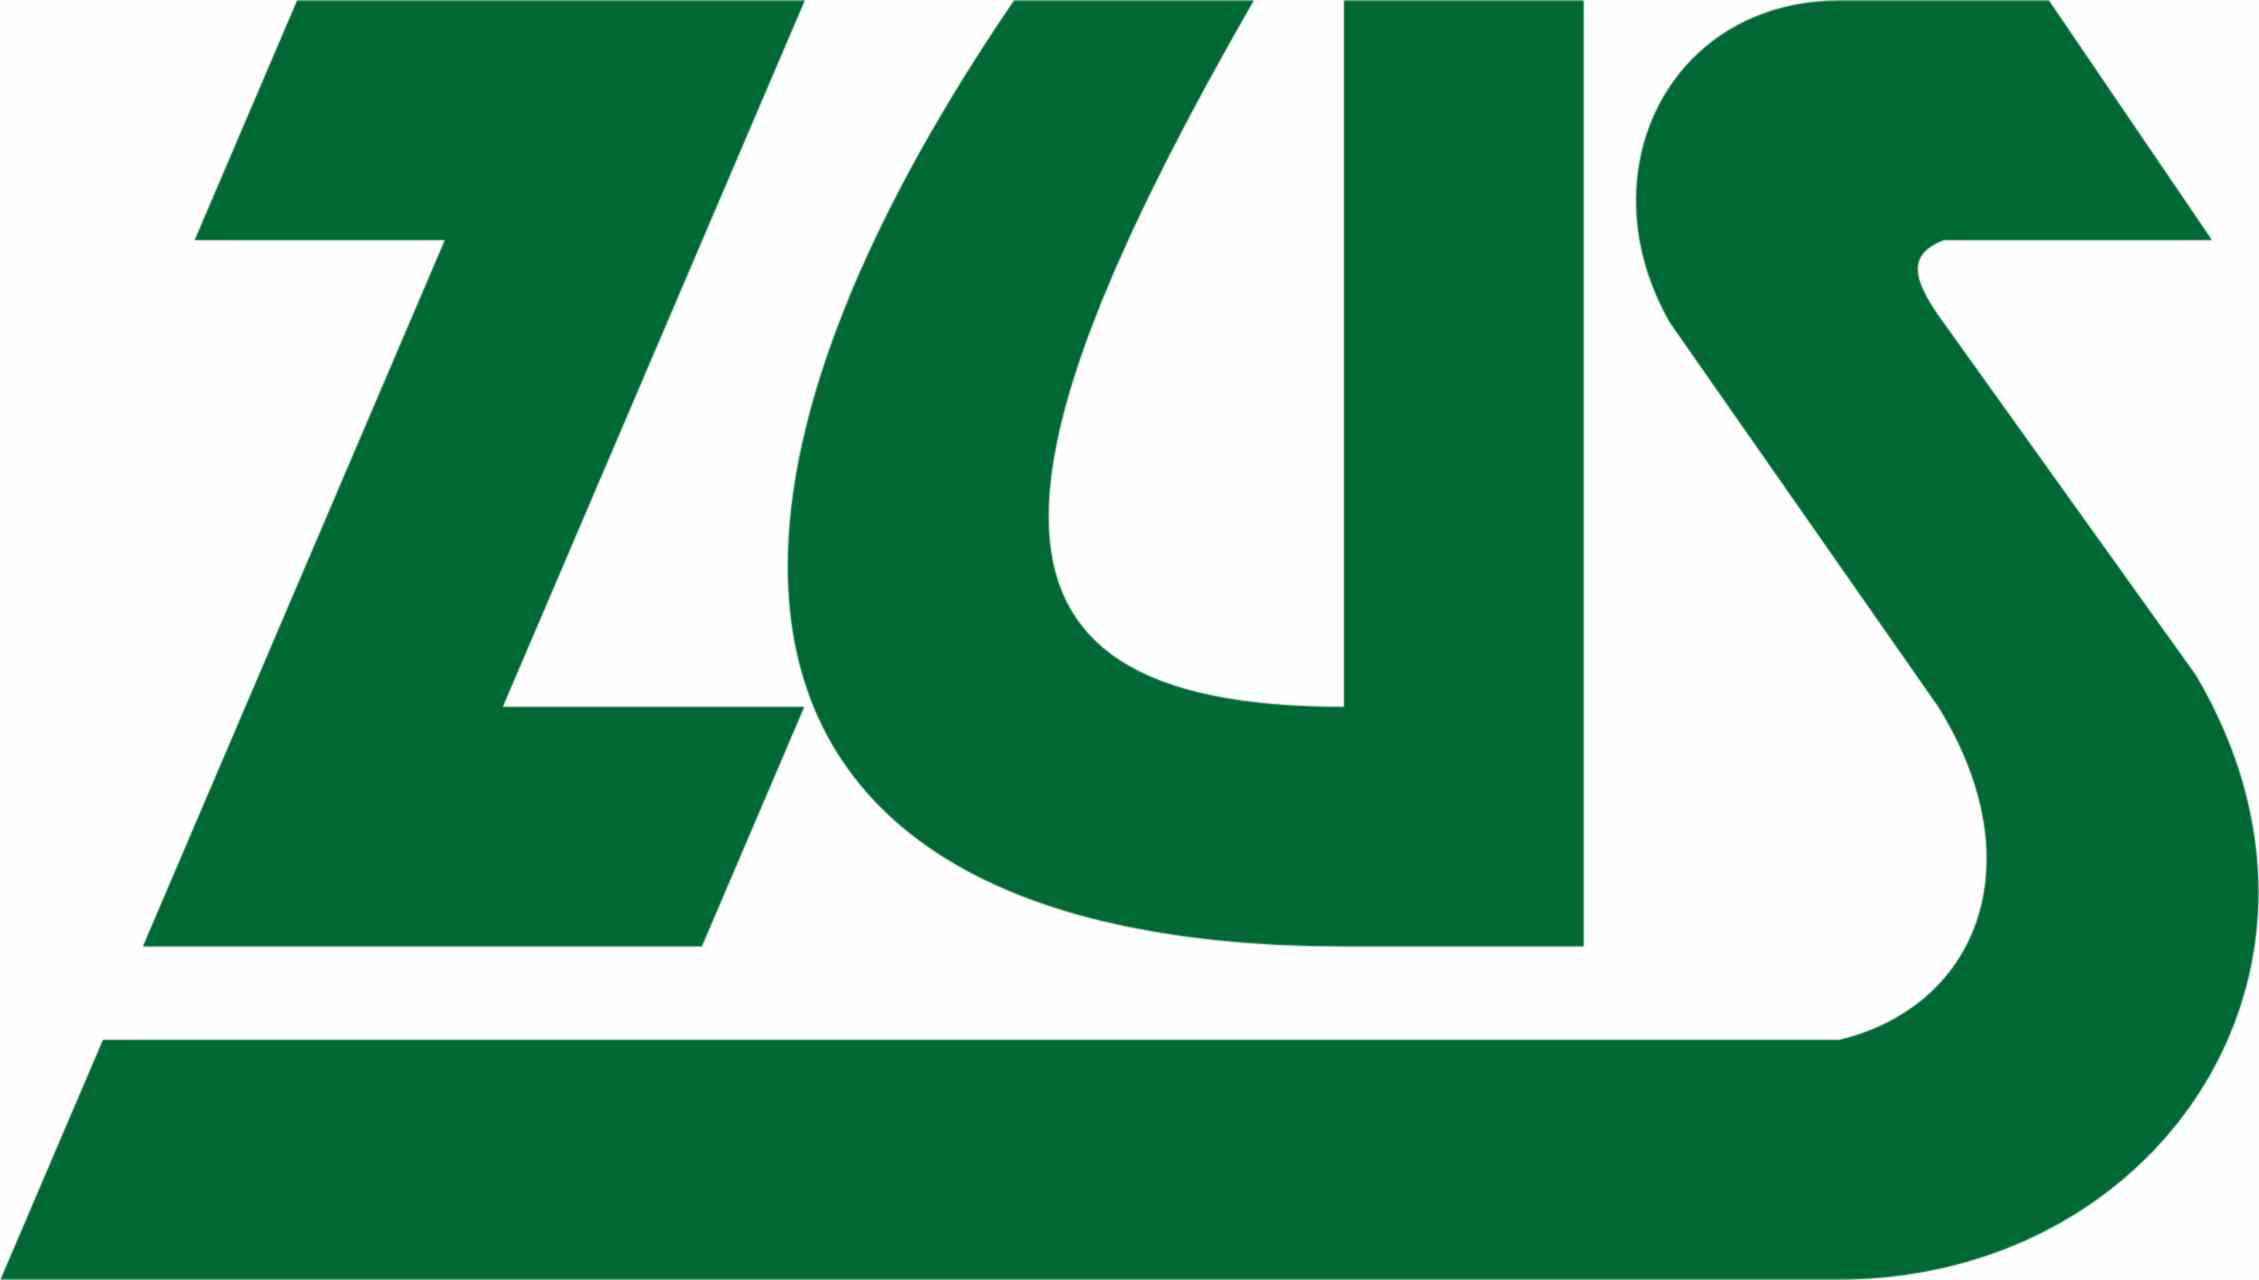 logo_ZUS